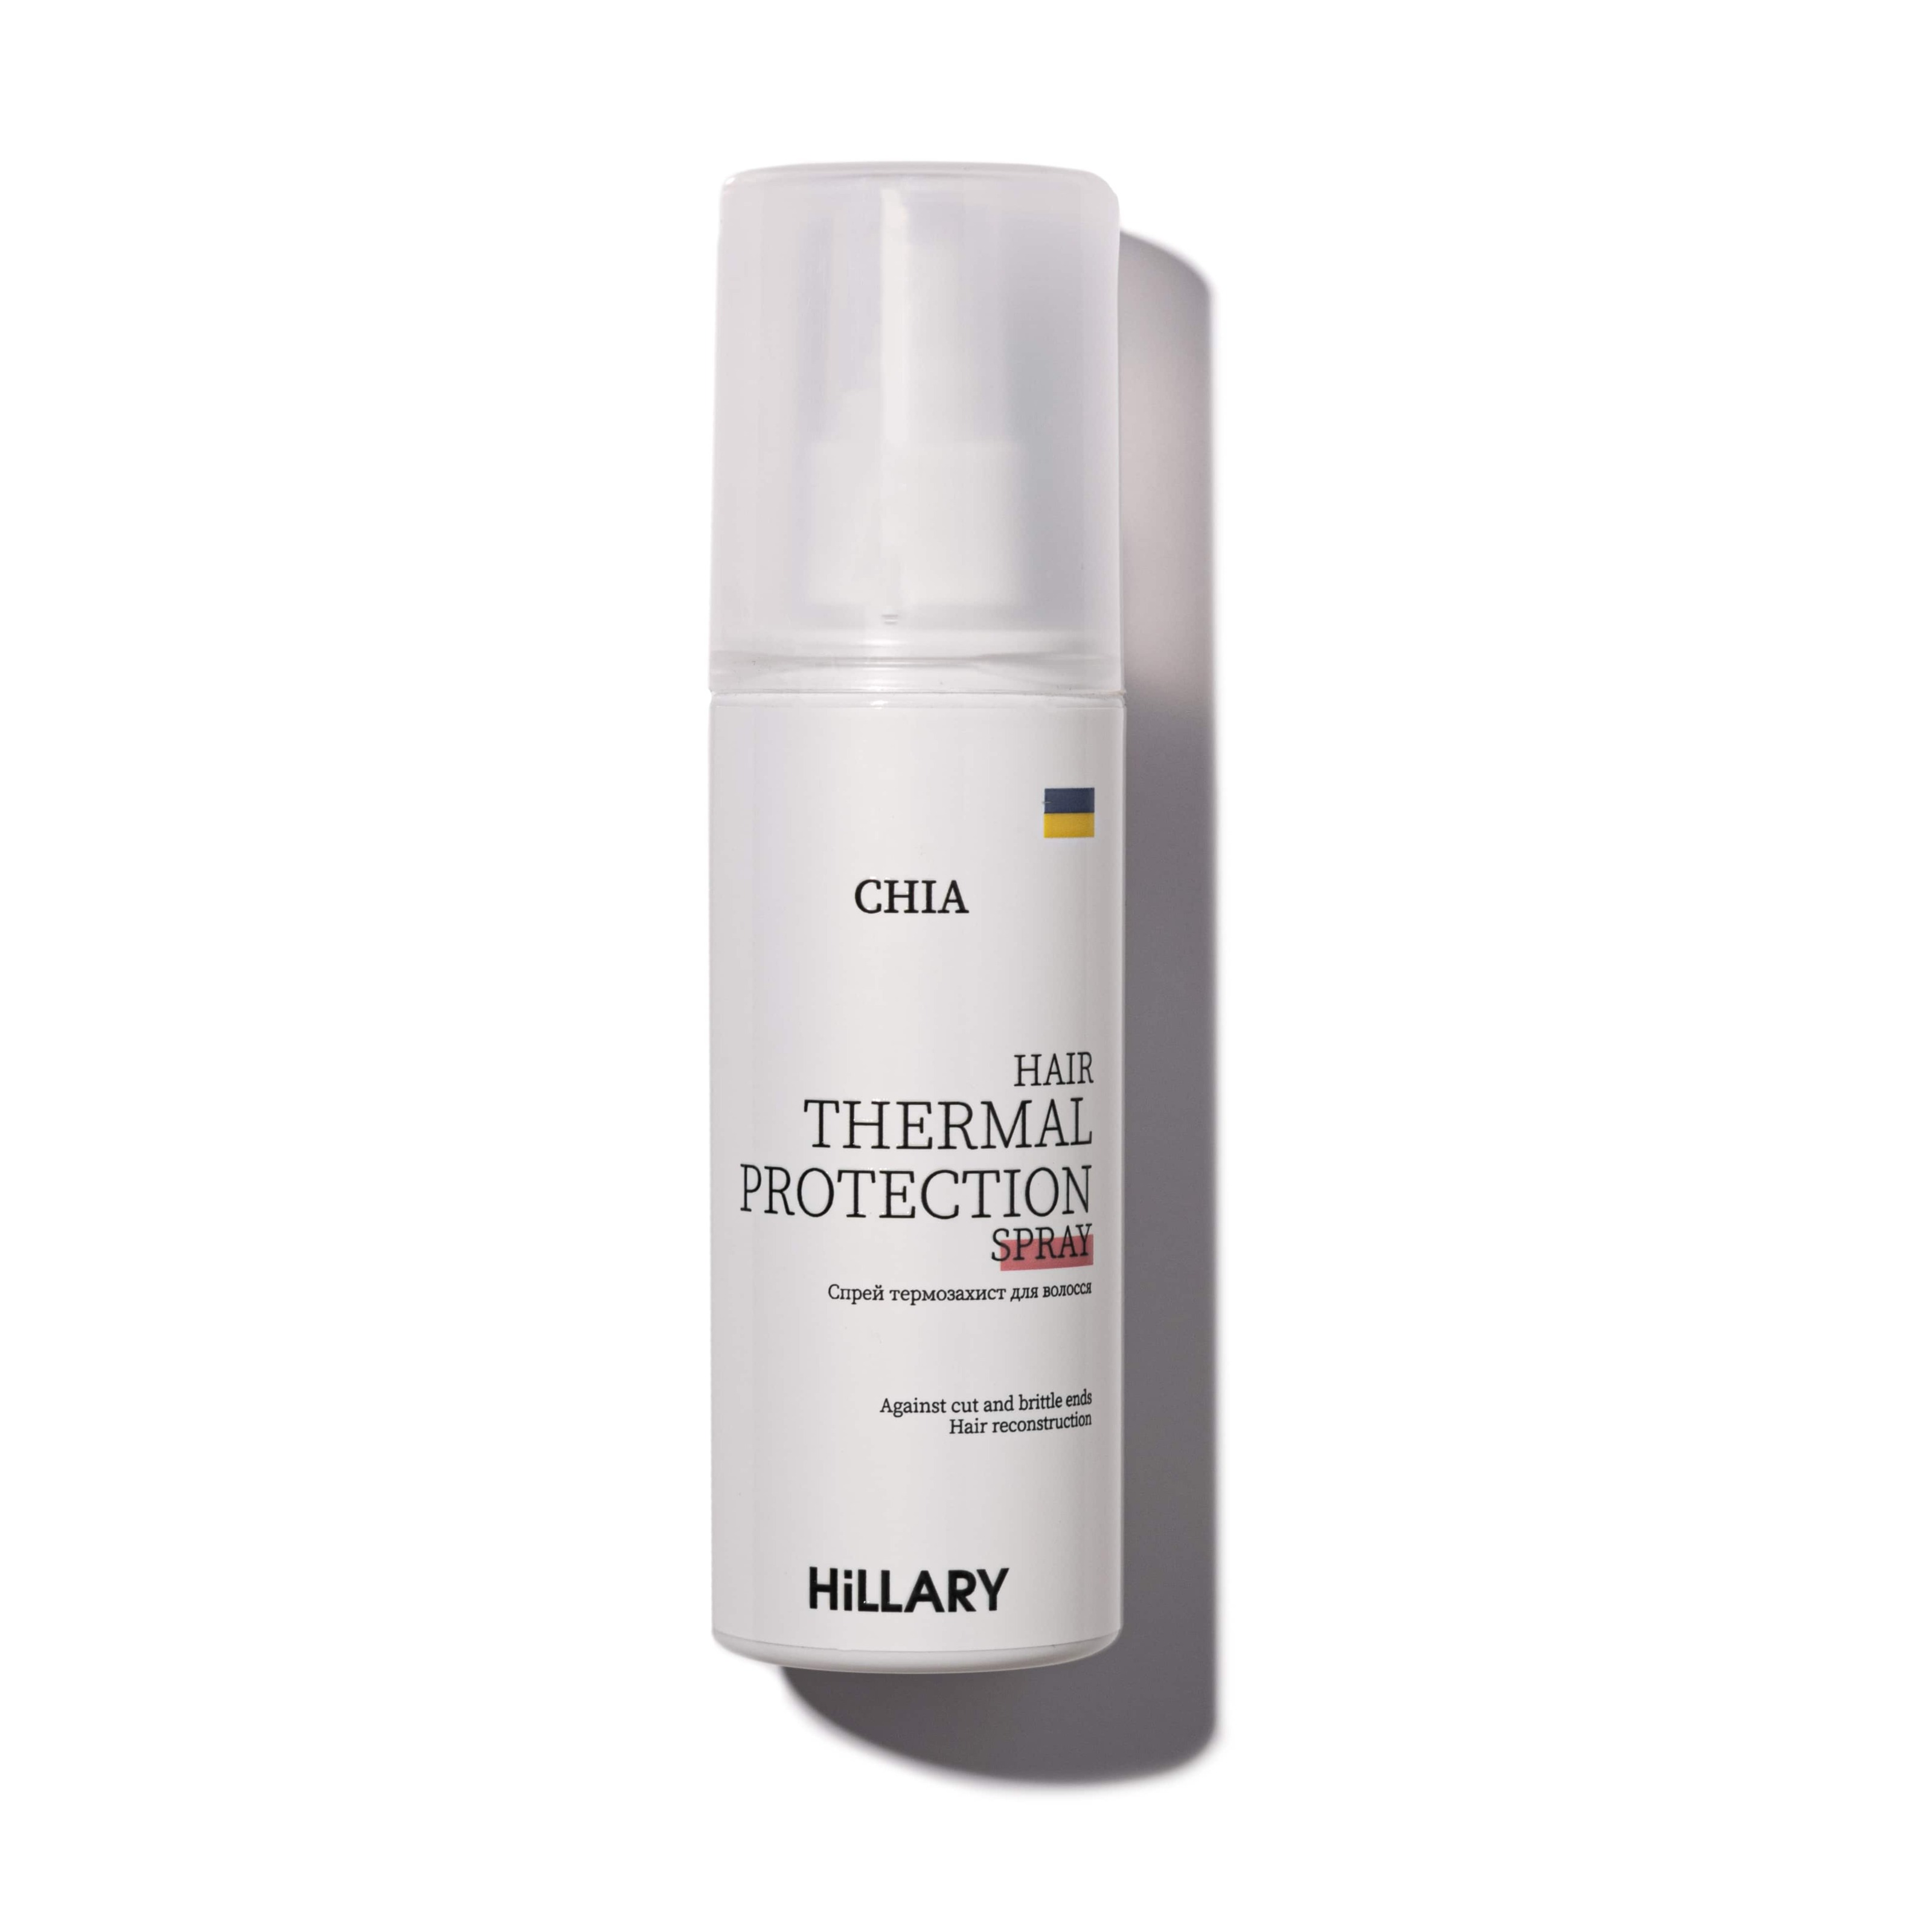 Акция на Спрей-термозахист для волосся Hillary CHIA, 120 мл от Hillary-shop UA